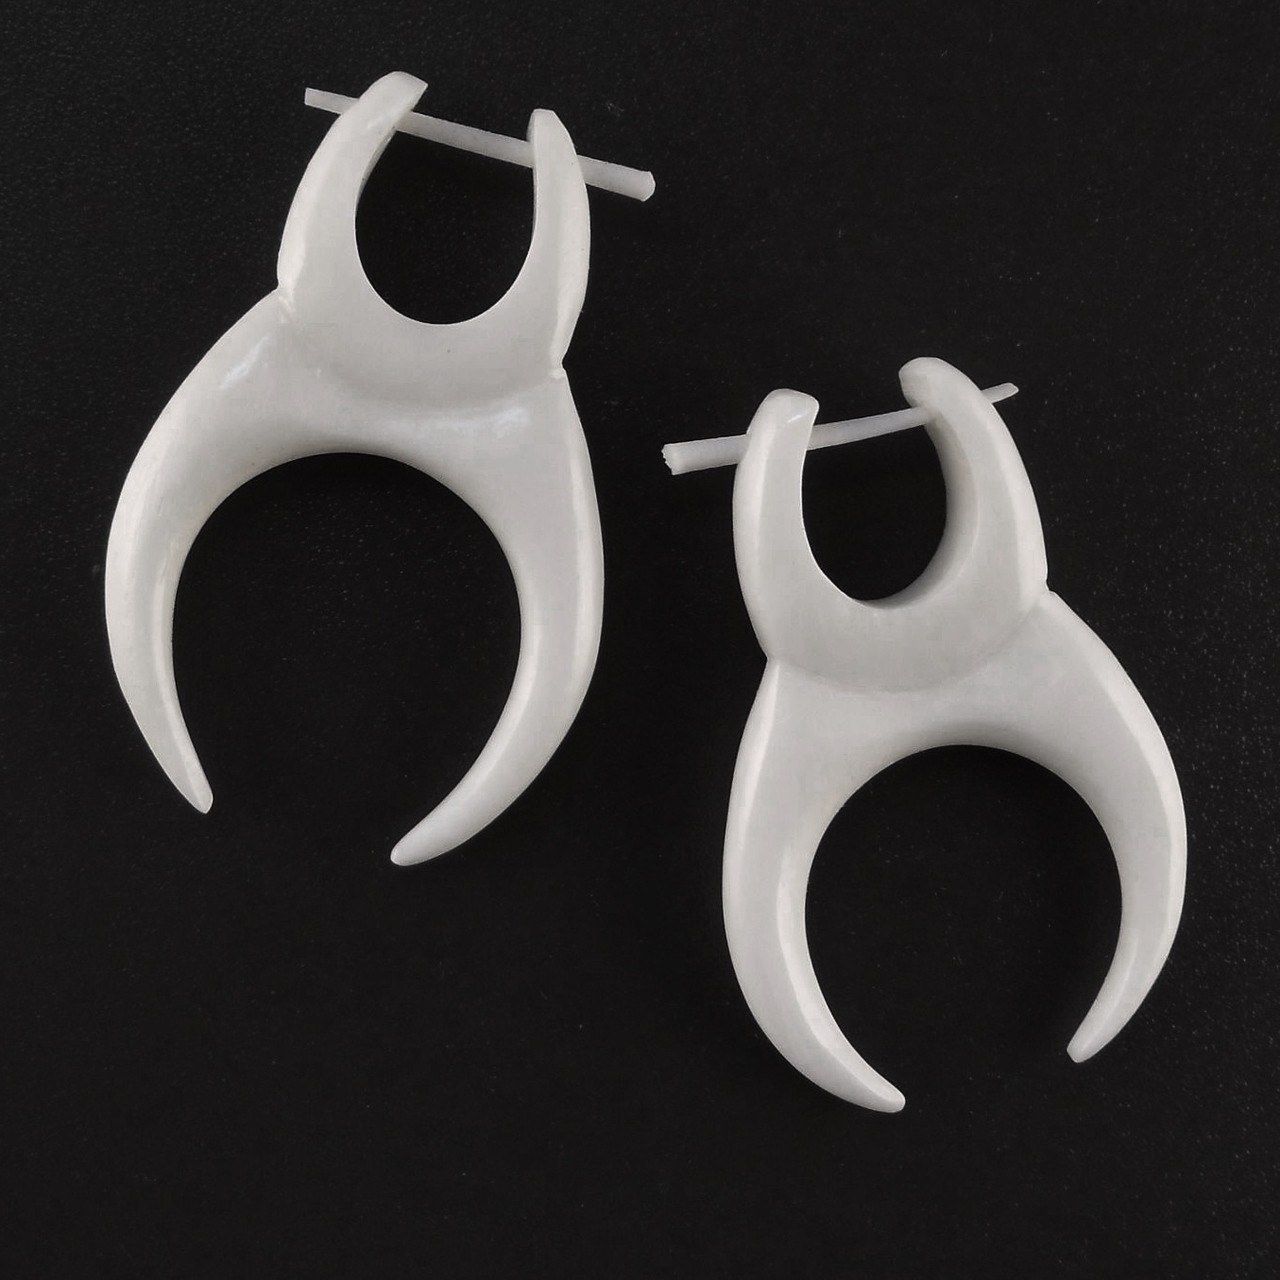 Natural Jewelry :|: Tusk. Bone Earrings, 1 inch W x 1 1/4 inch L. | Tribal Earrings